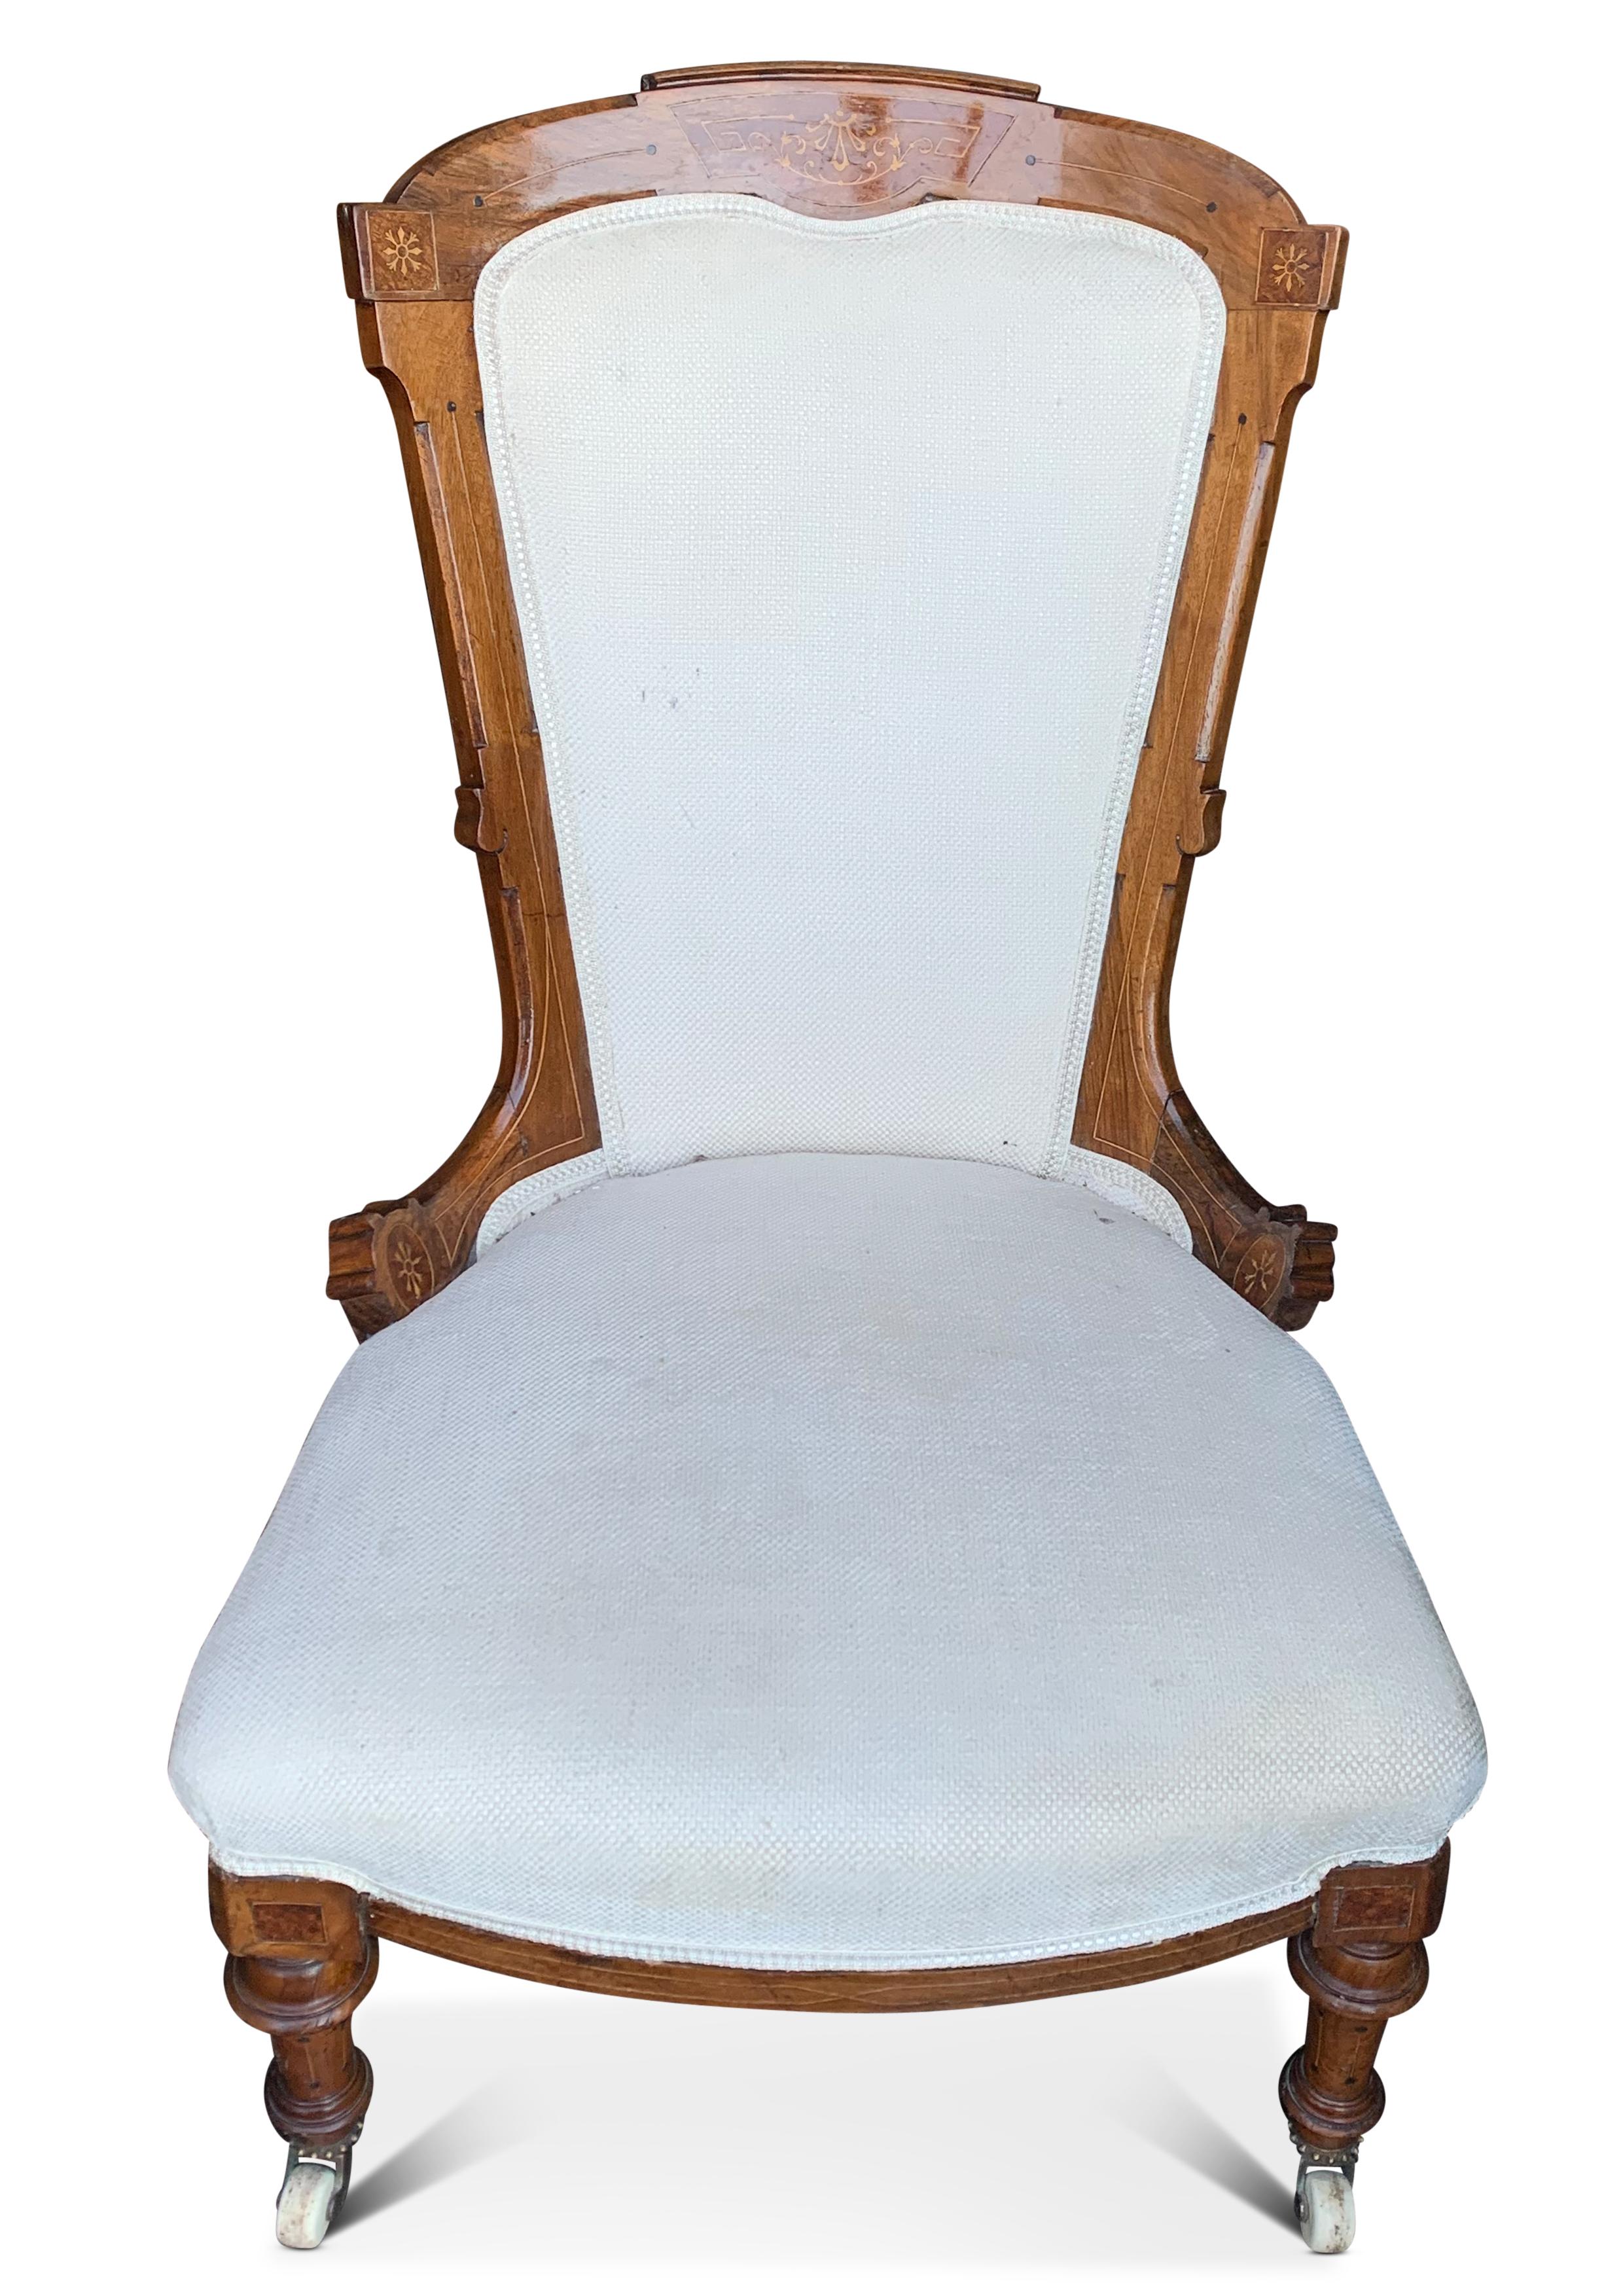 Ein Empire Nussbaum gepolstert Salon Stuhl mit dekorativen Intarsien & Keramik Rollen 1800s


